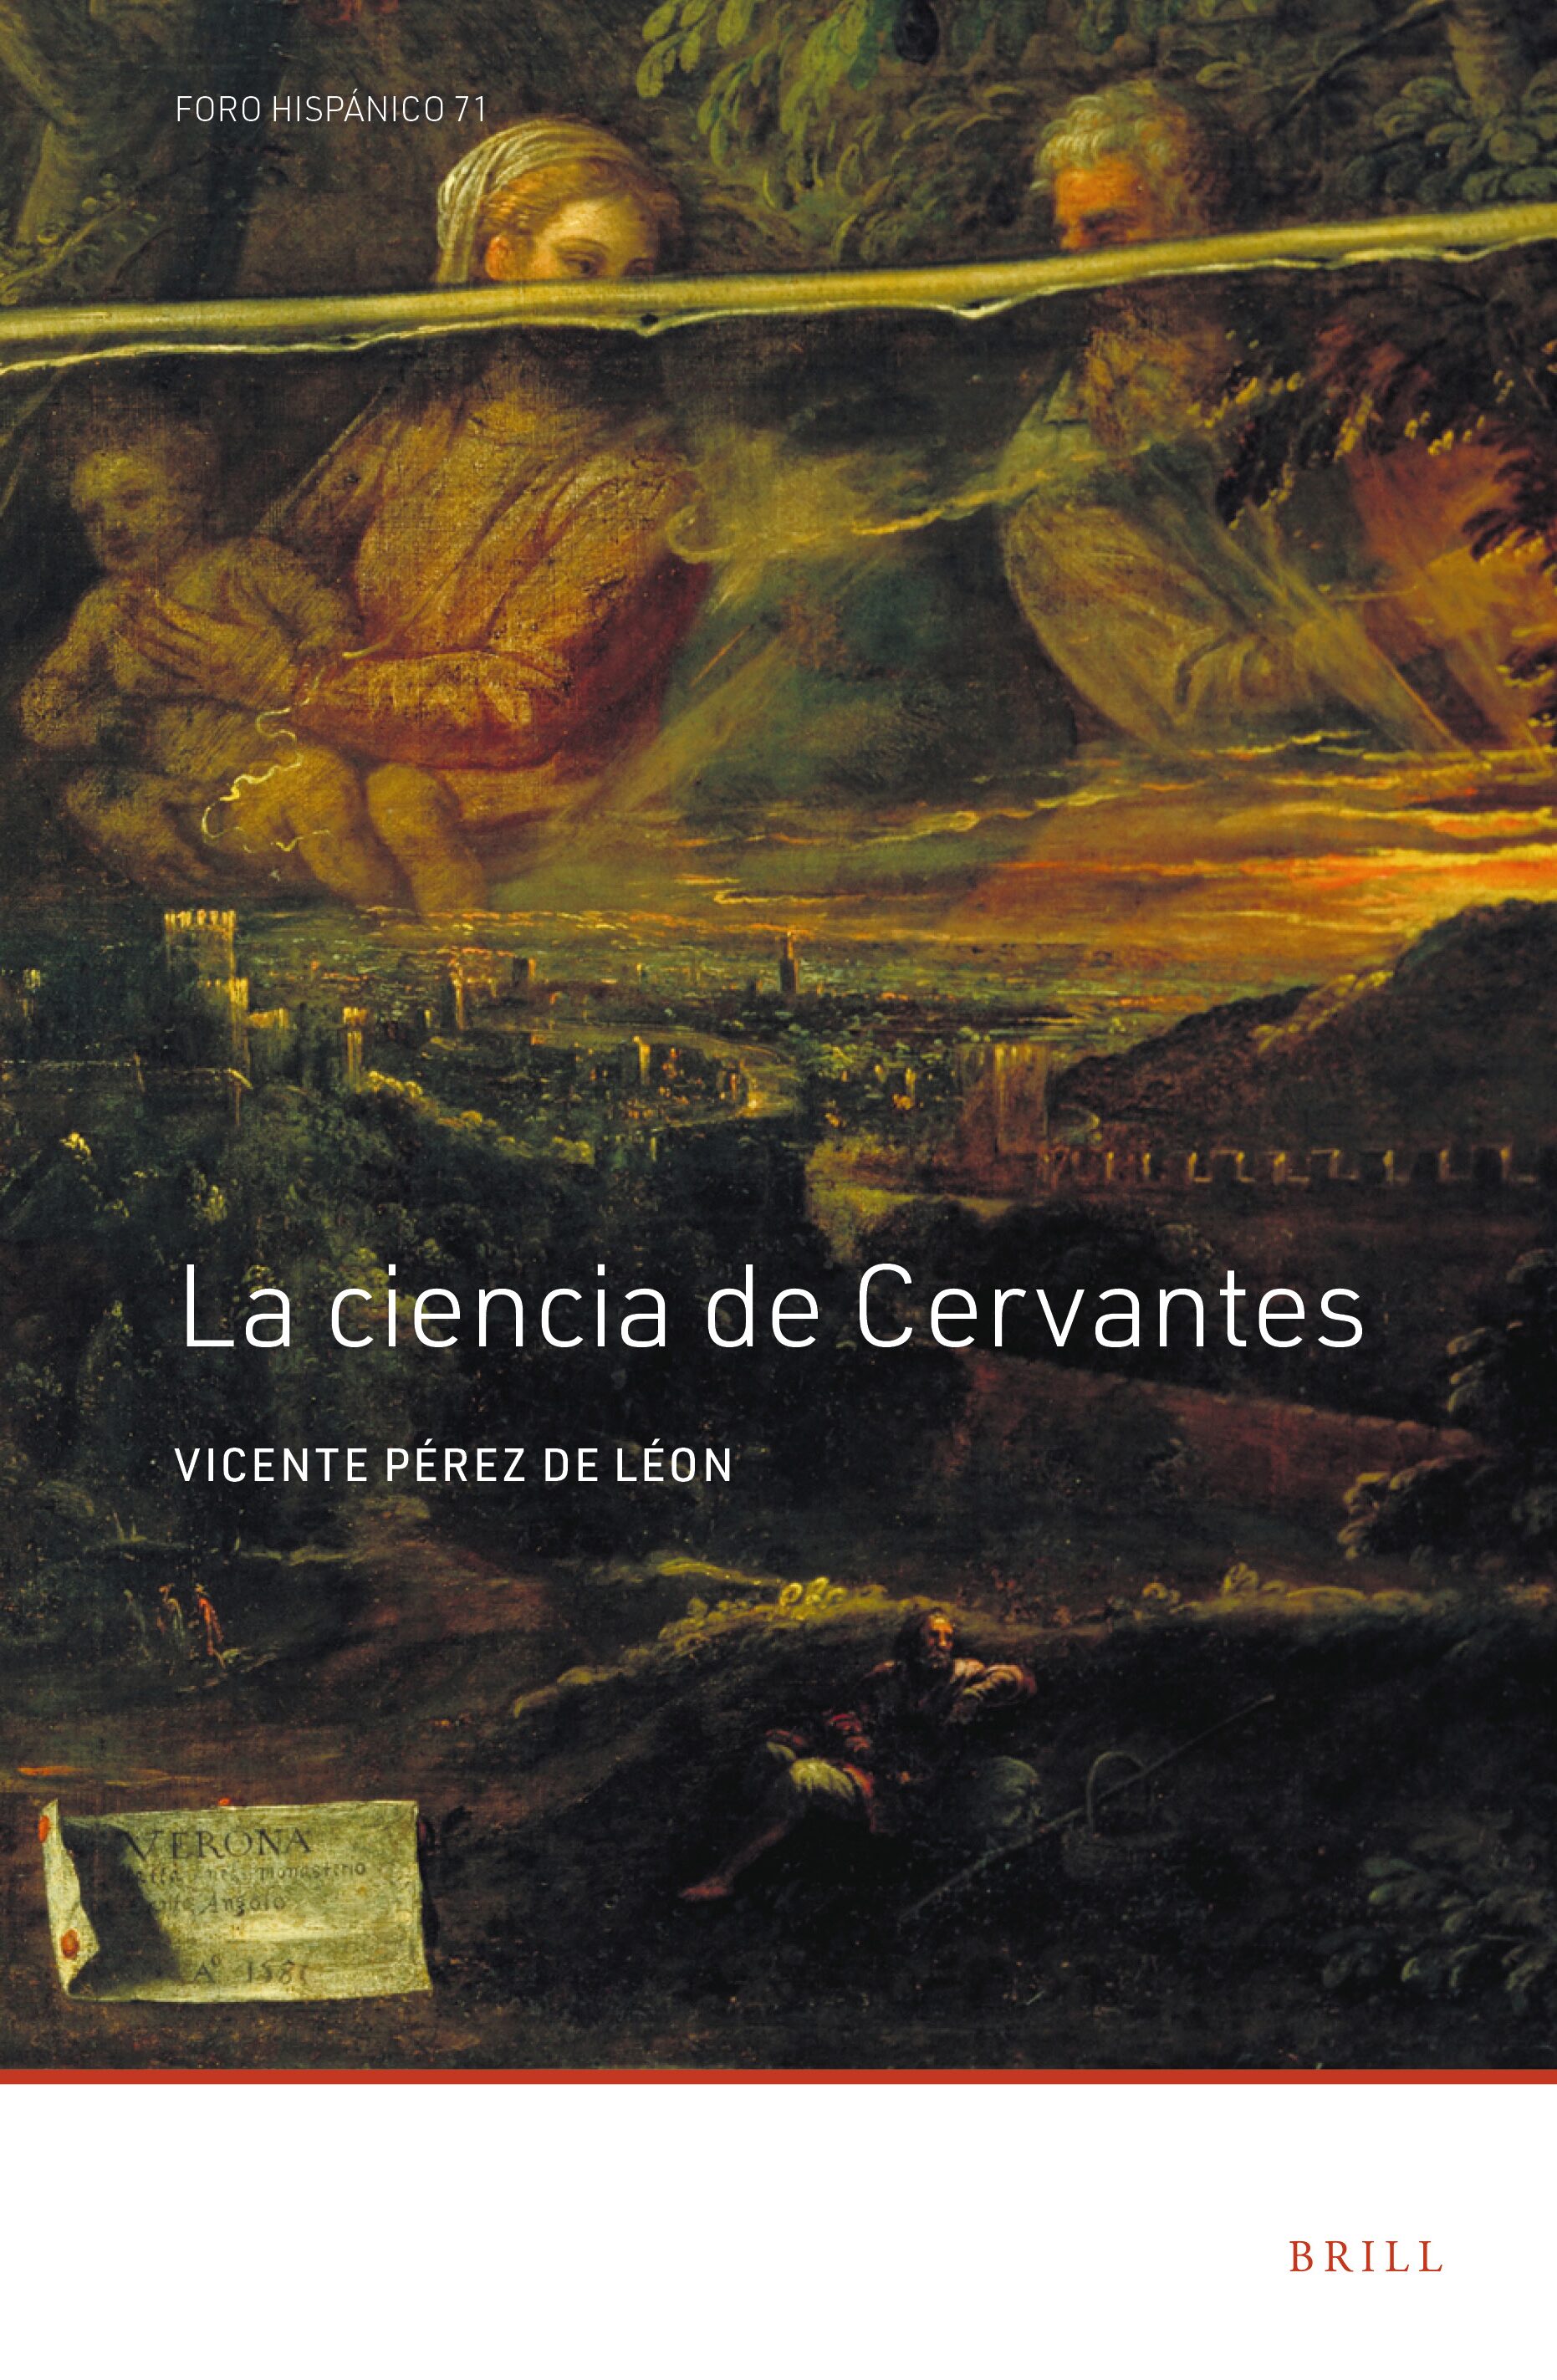 Imagen de portada del libro La ciencia de Cervantes